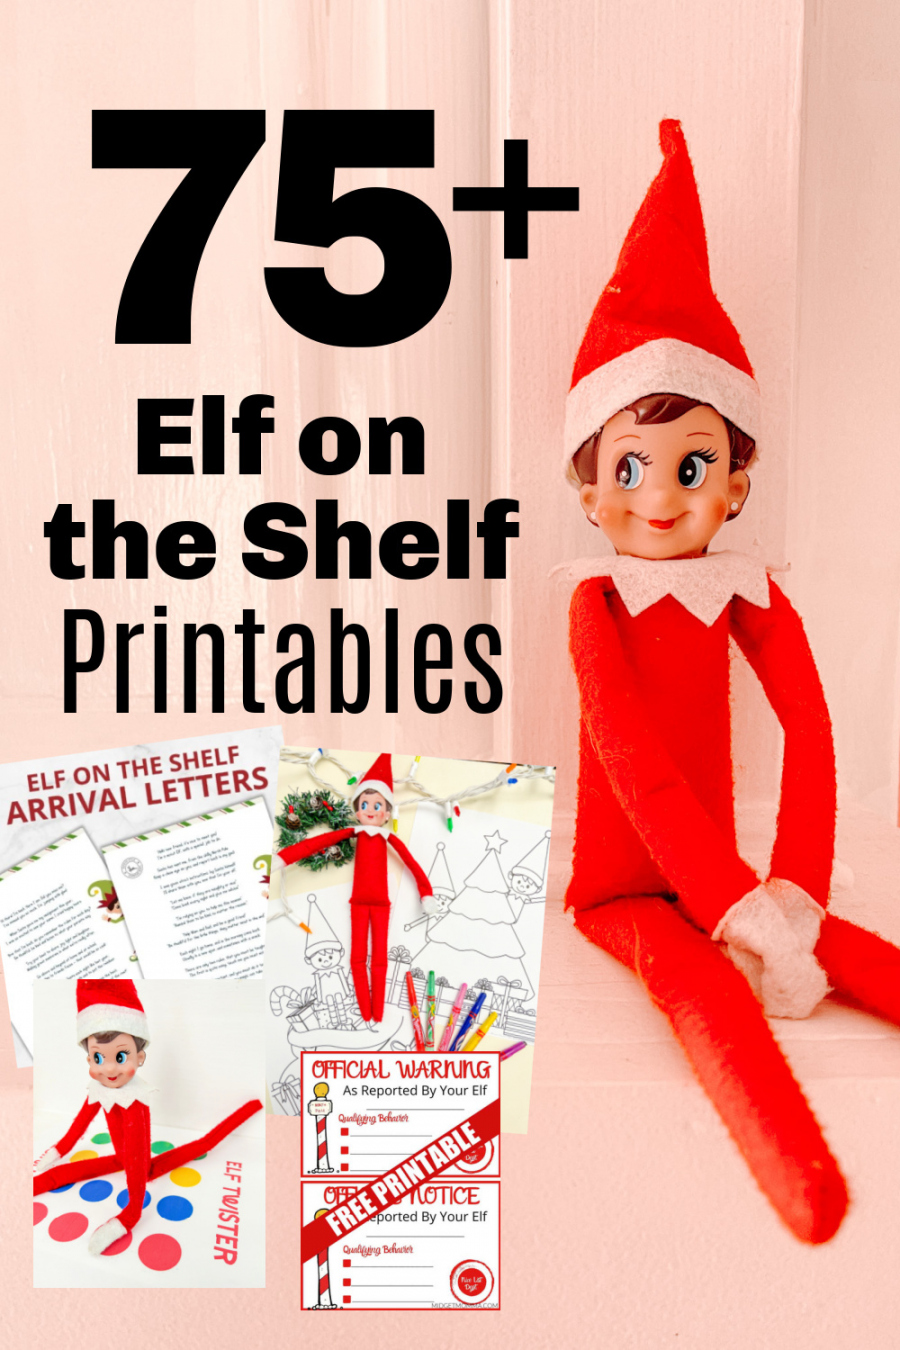 Free Elf On The Shelf Printable - Printable - Ultimate List of FREE Elf on the Shelf Printables - Over